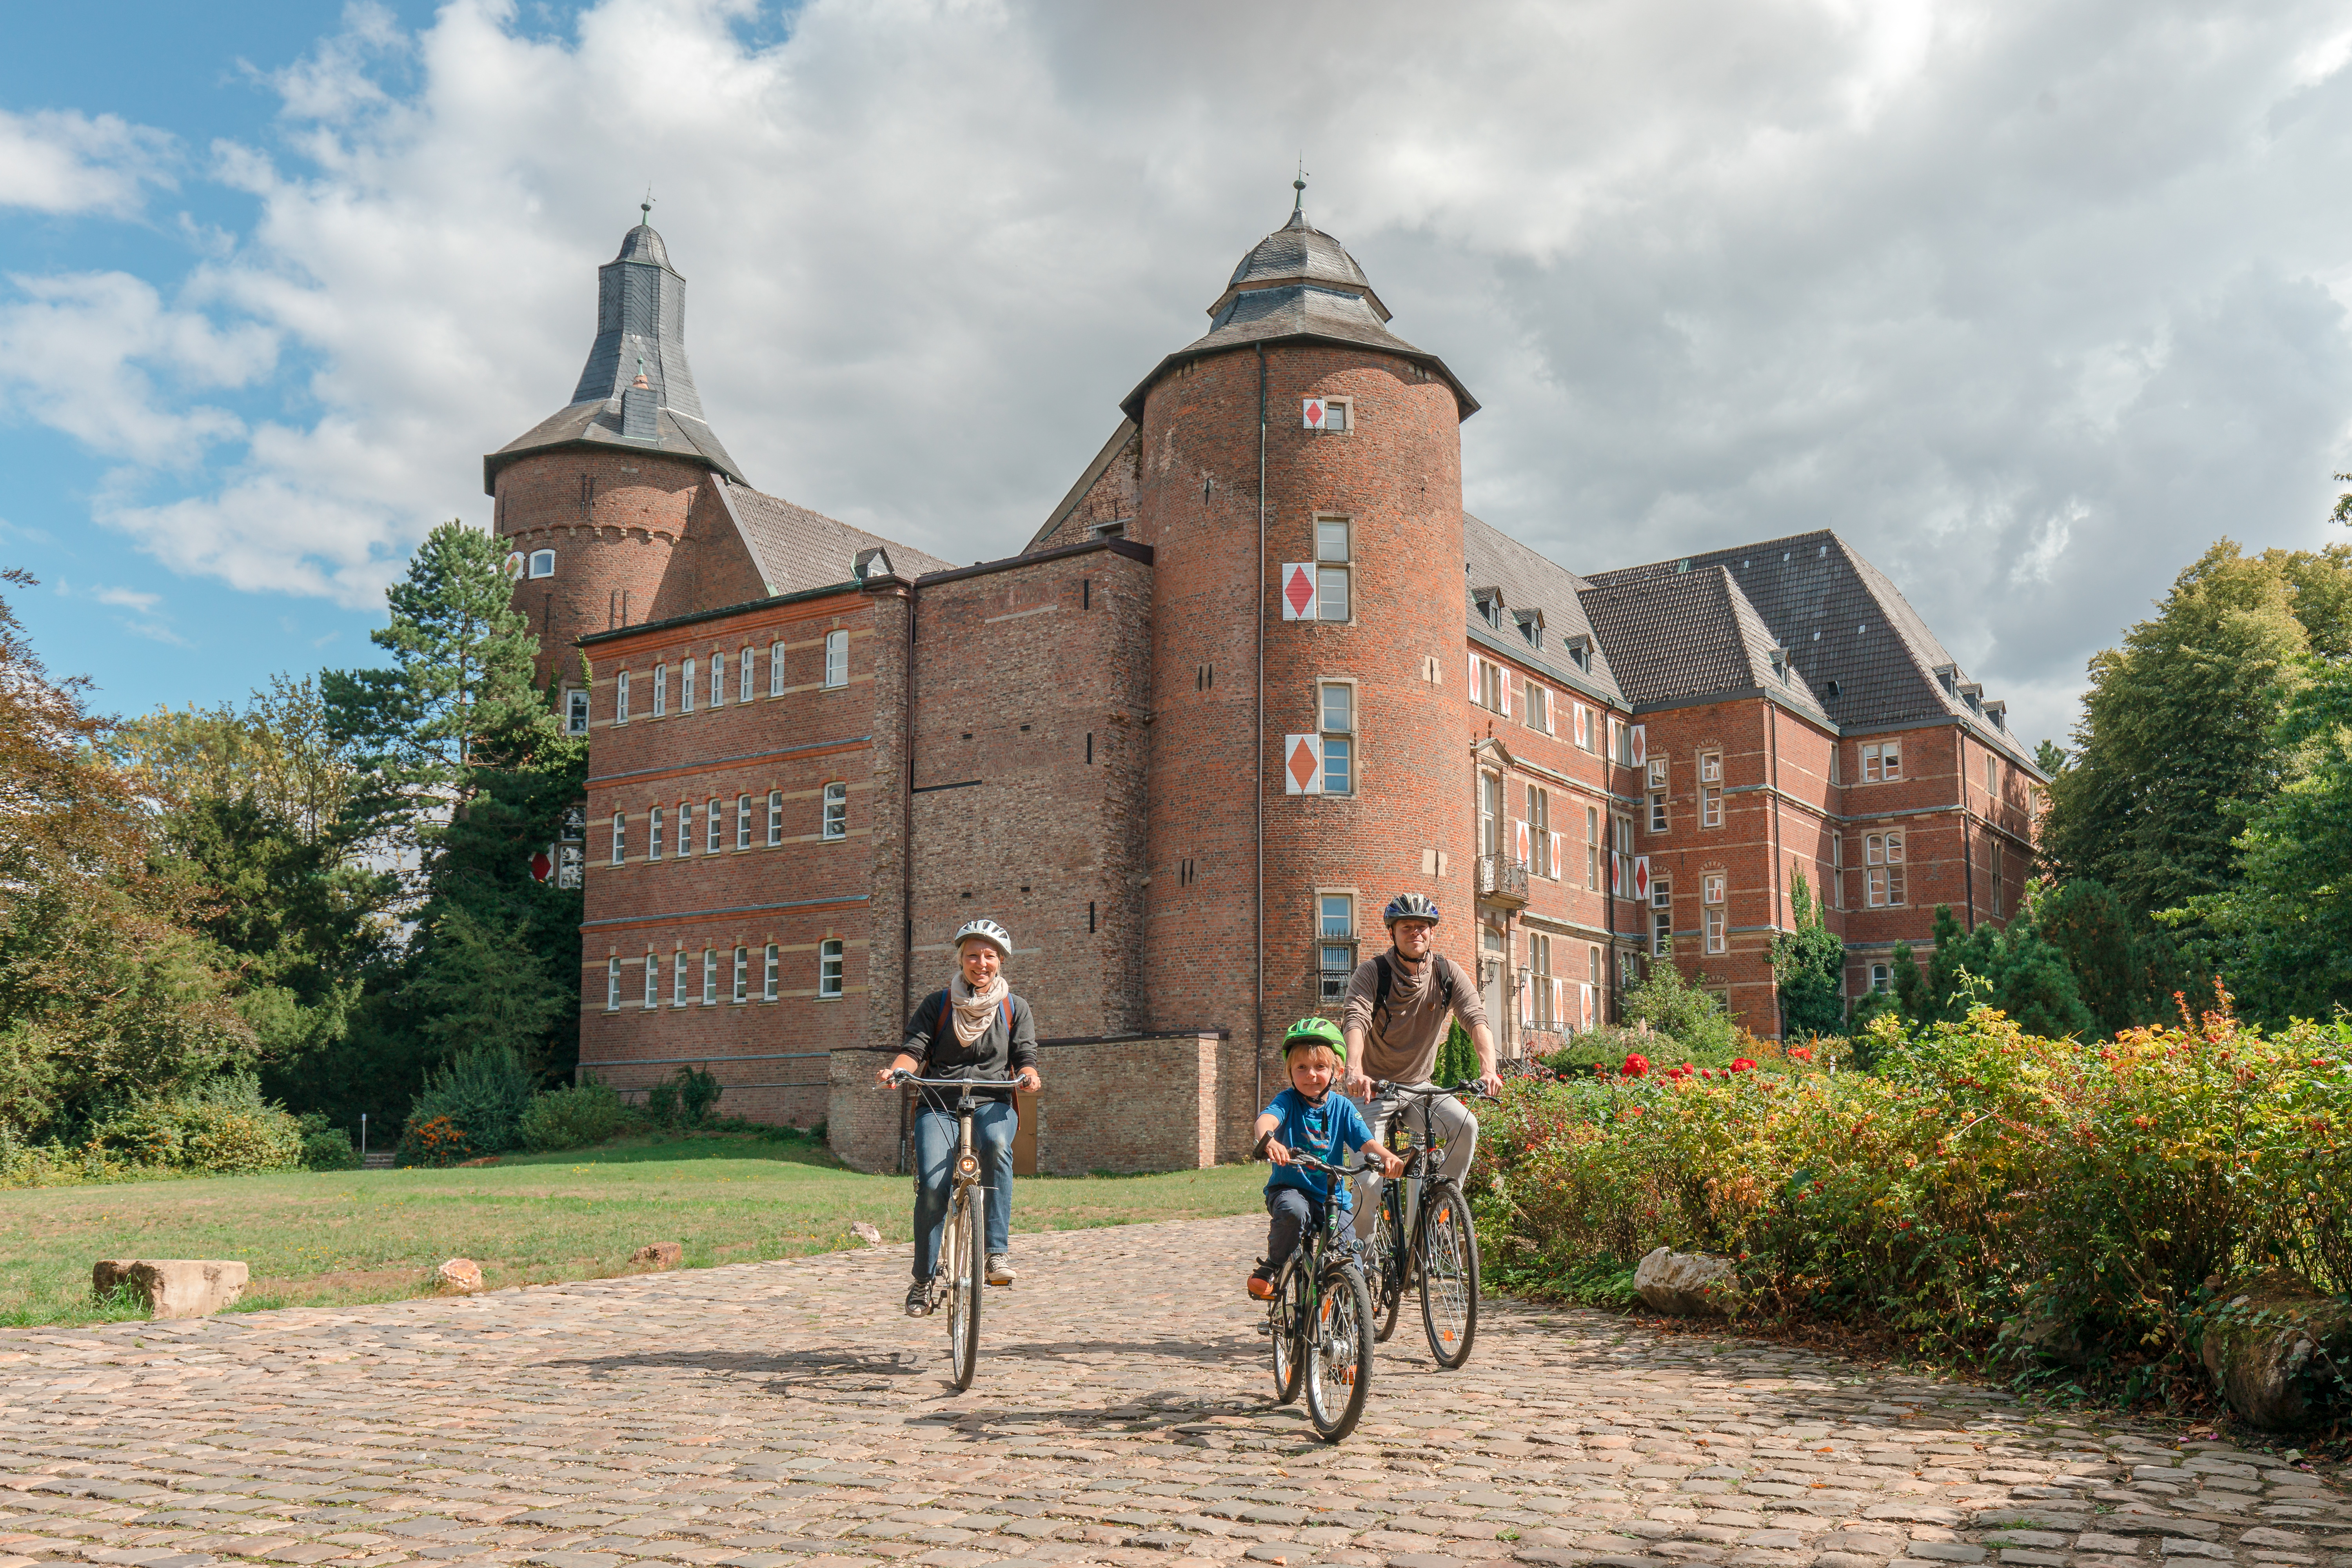 Radfahrer am Schloss Bedburg, einer von vielen Wasserburgen in der Radregion Rheinland